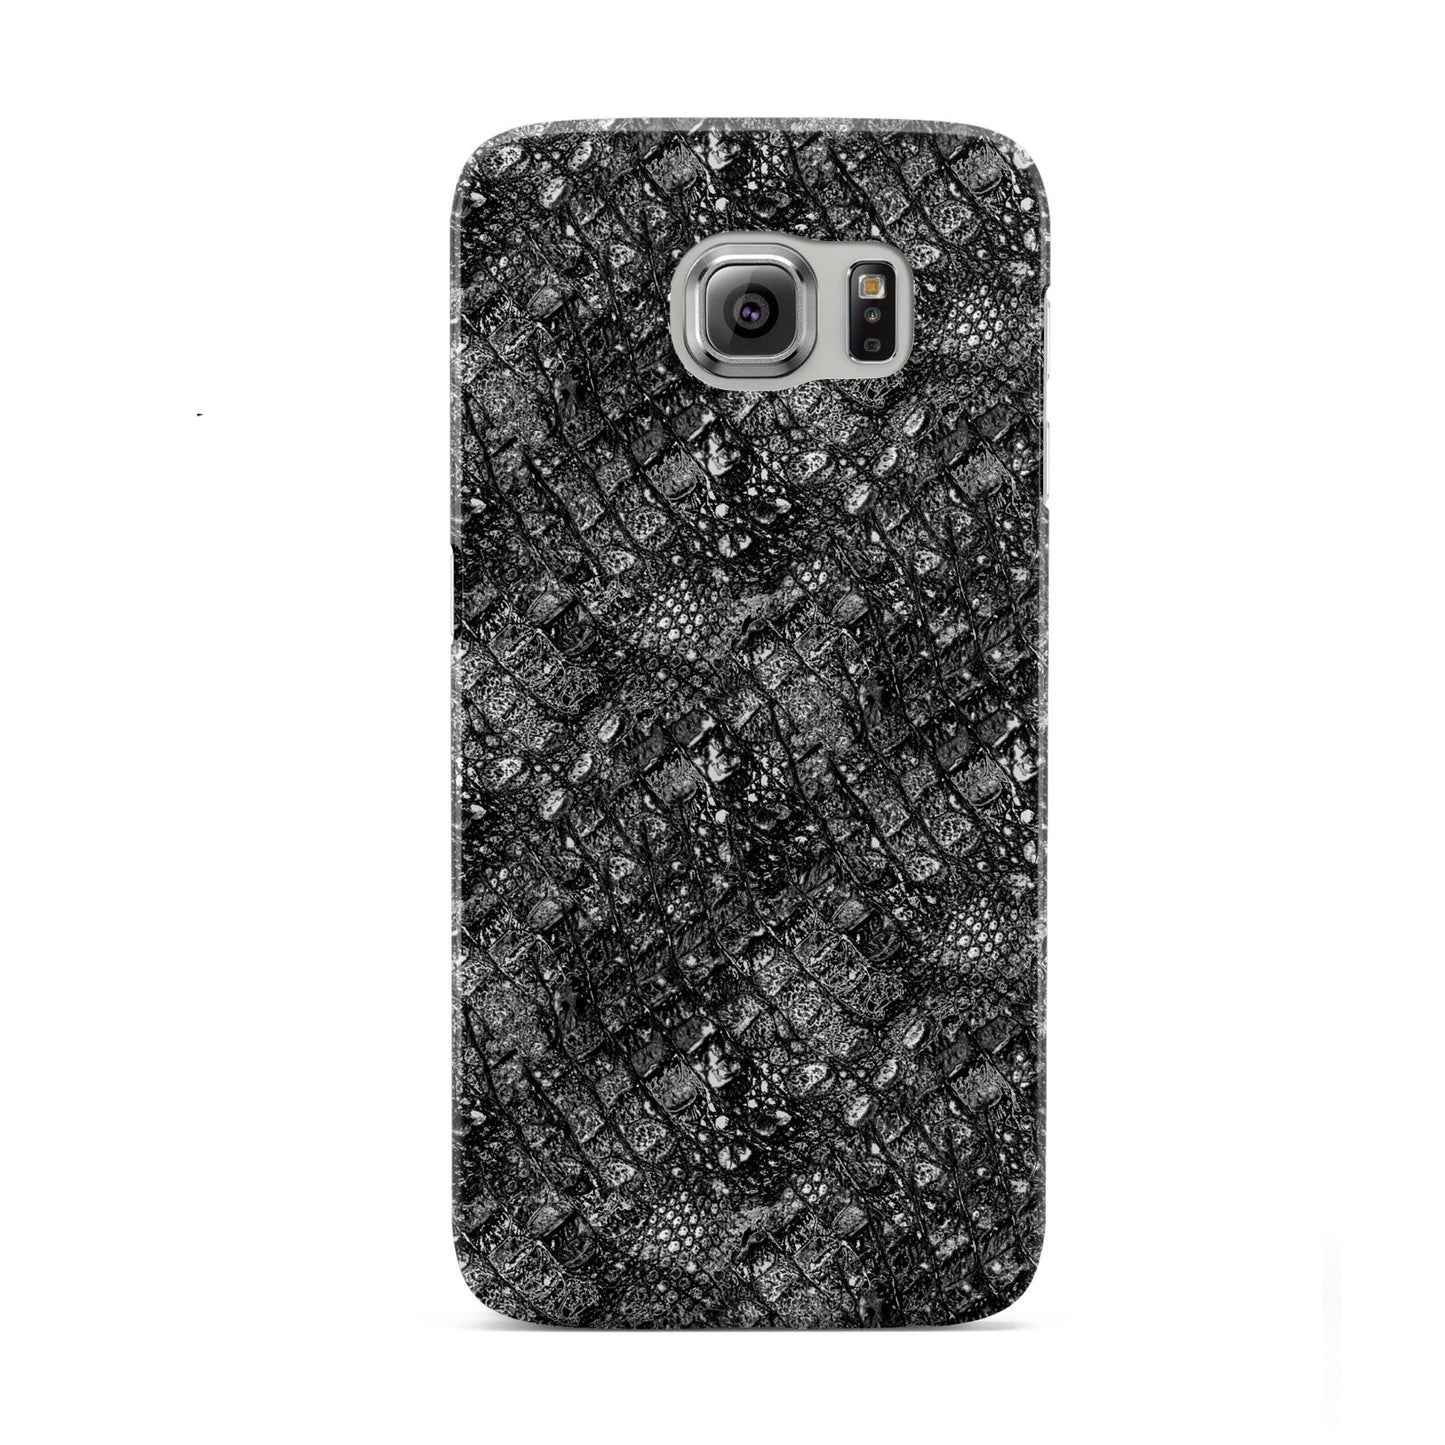 Snakeskin Design Samsung Galaxy S6 Case